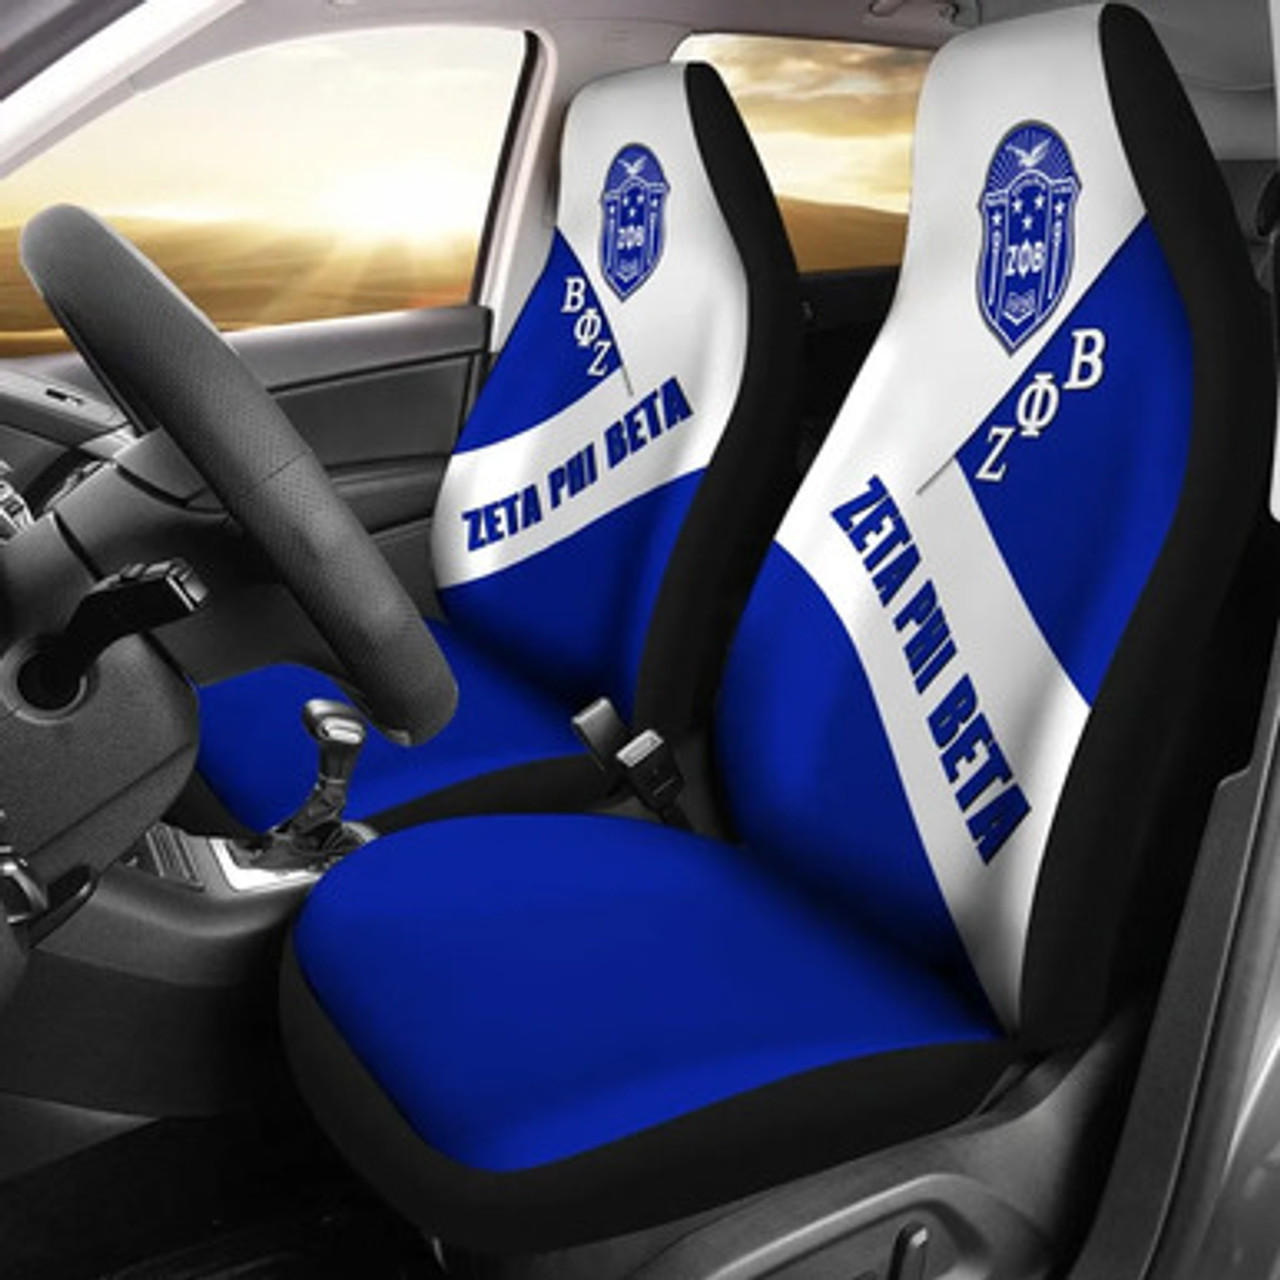 Zeta Phi Beta Car Seat Cover - Sorority In Me Car Seat Cover